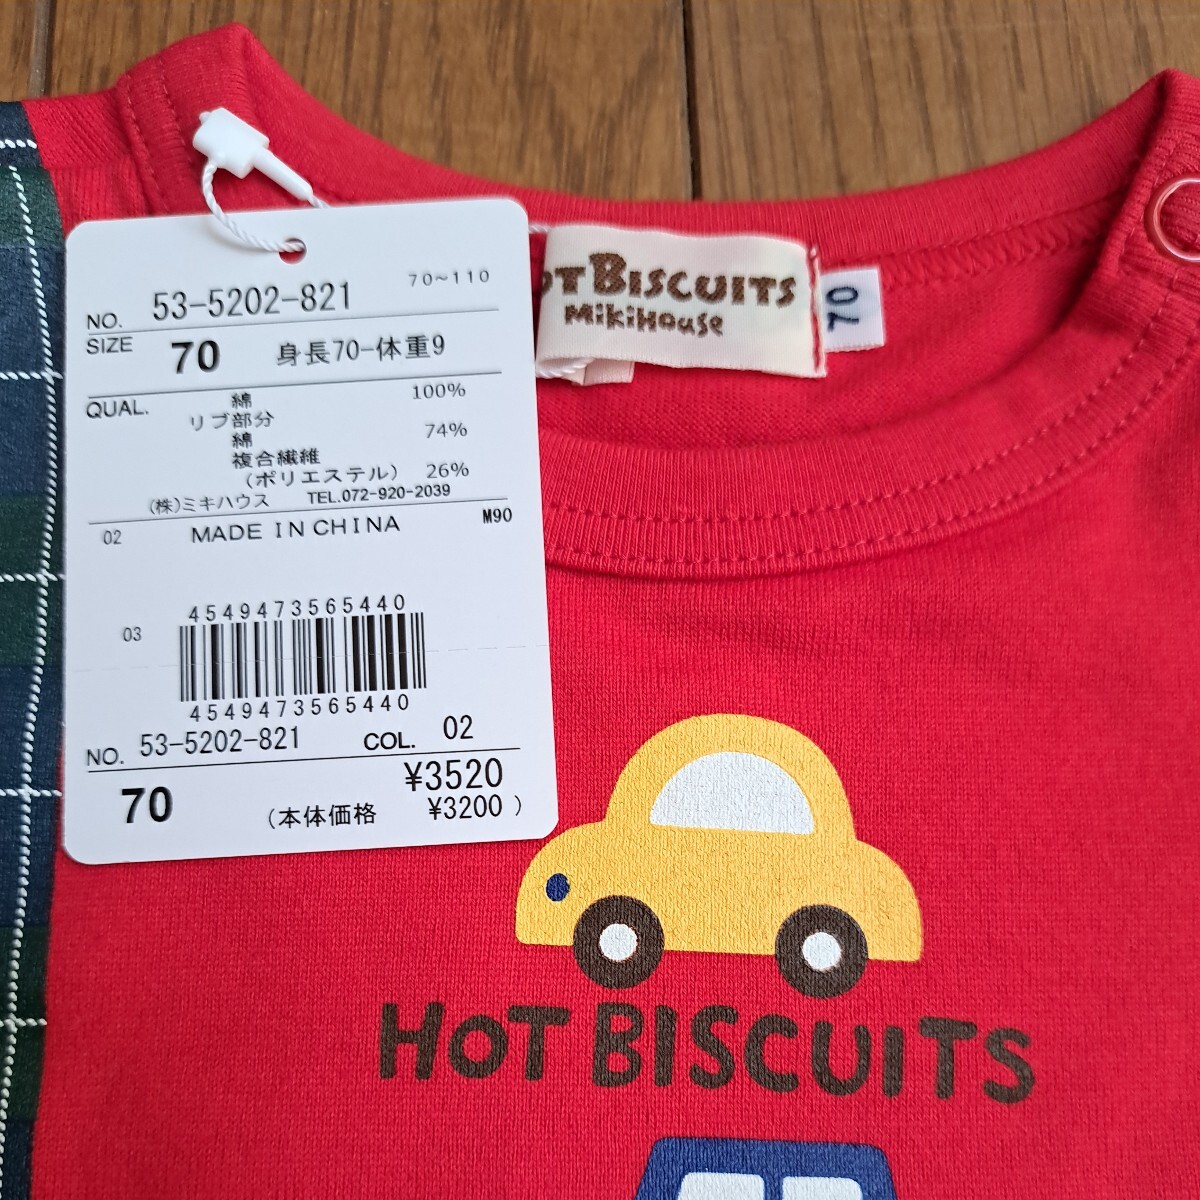 ⑥ новый товар 70cm обычная цена 3520 иен hot винт ketsu футболка с длинным рукавом long T футболка .... подтяжки красный красный Miki House крышка .